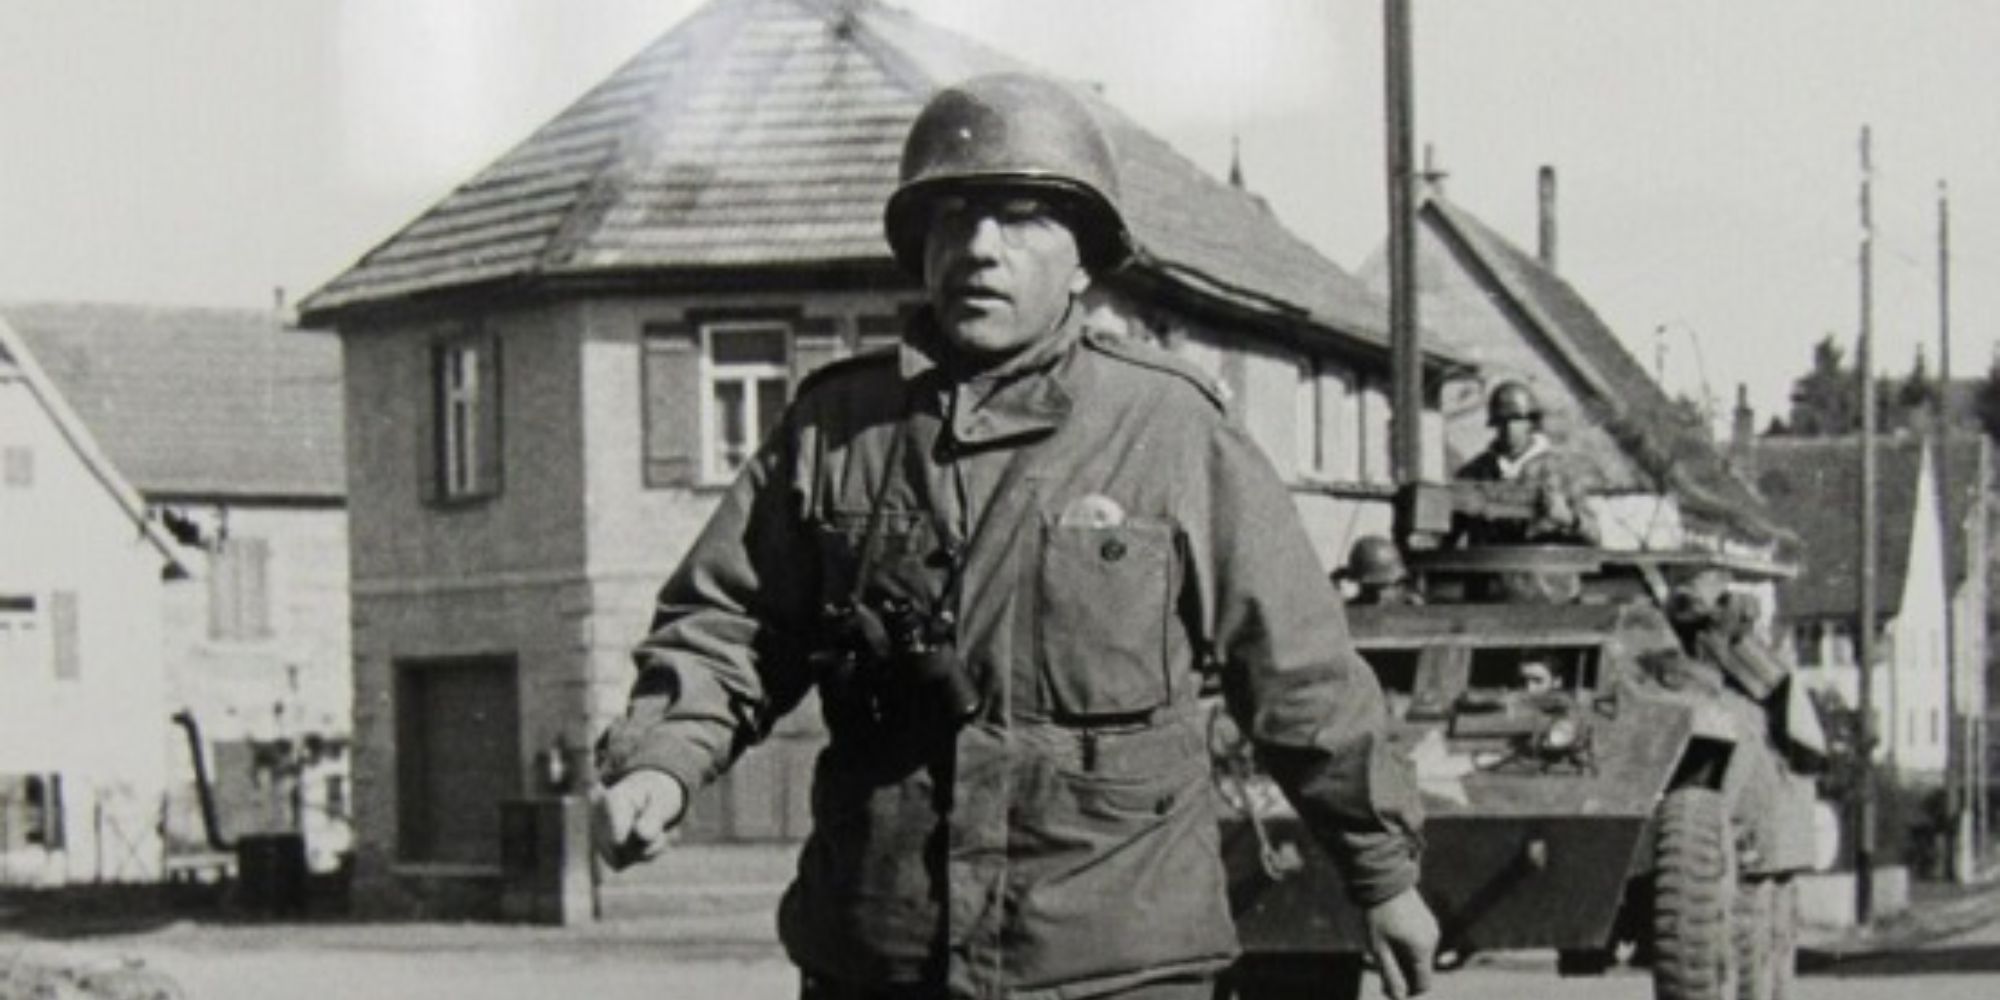 Colonel Boris Pash in uniform